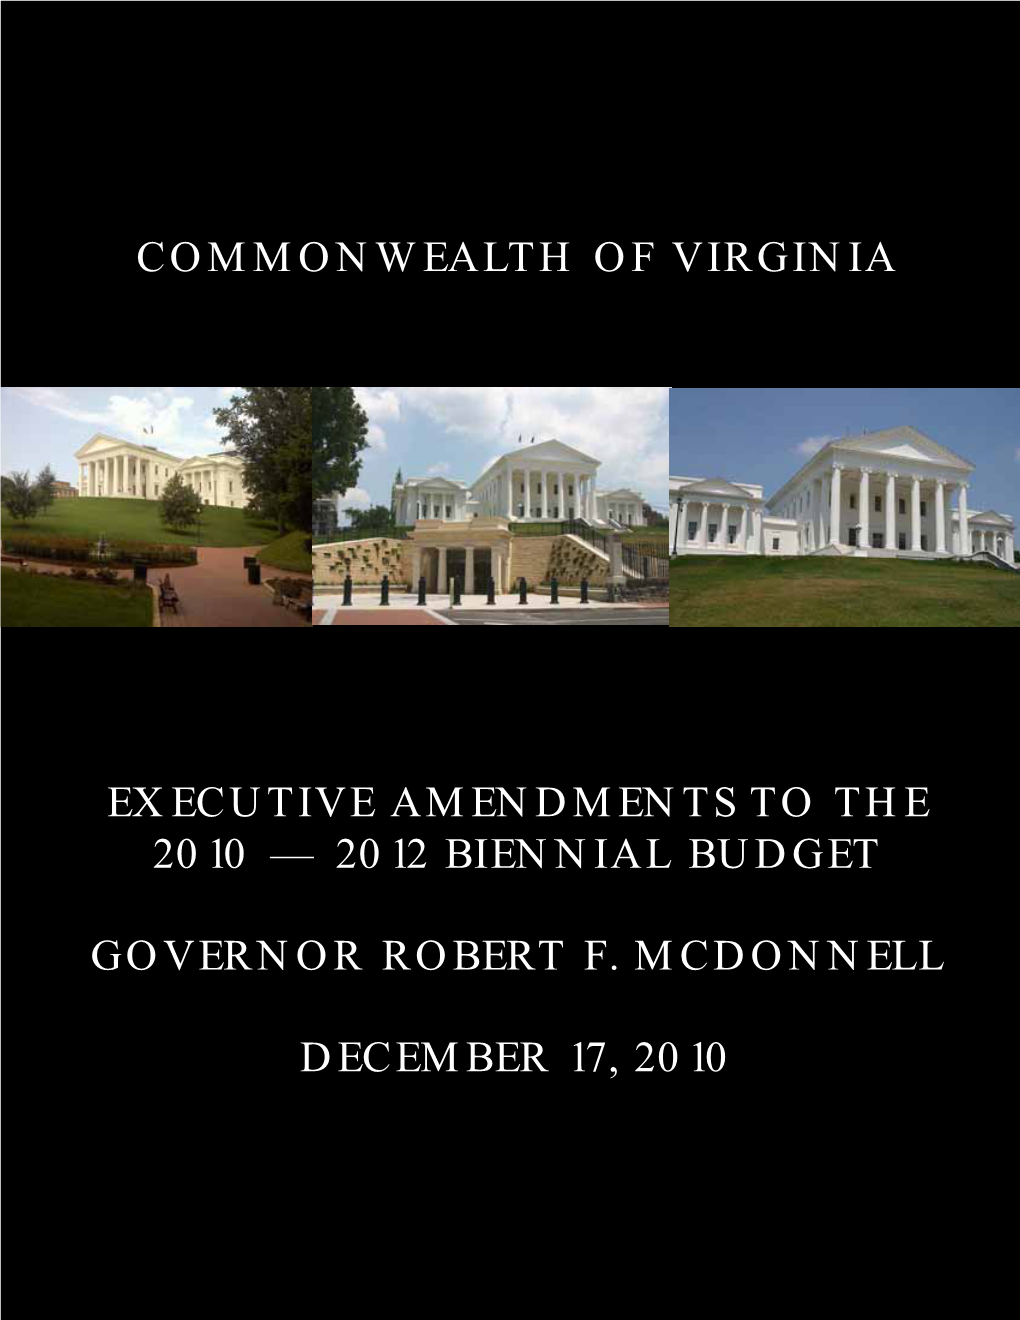 Virginia's 2011 Executive Budget Document